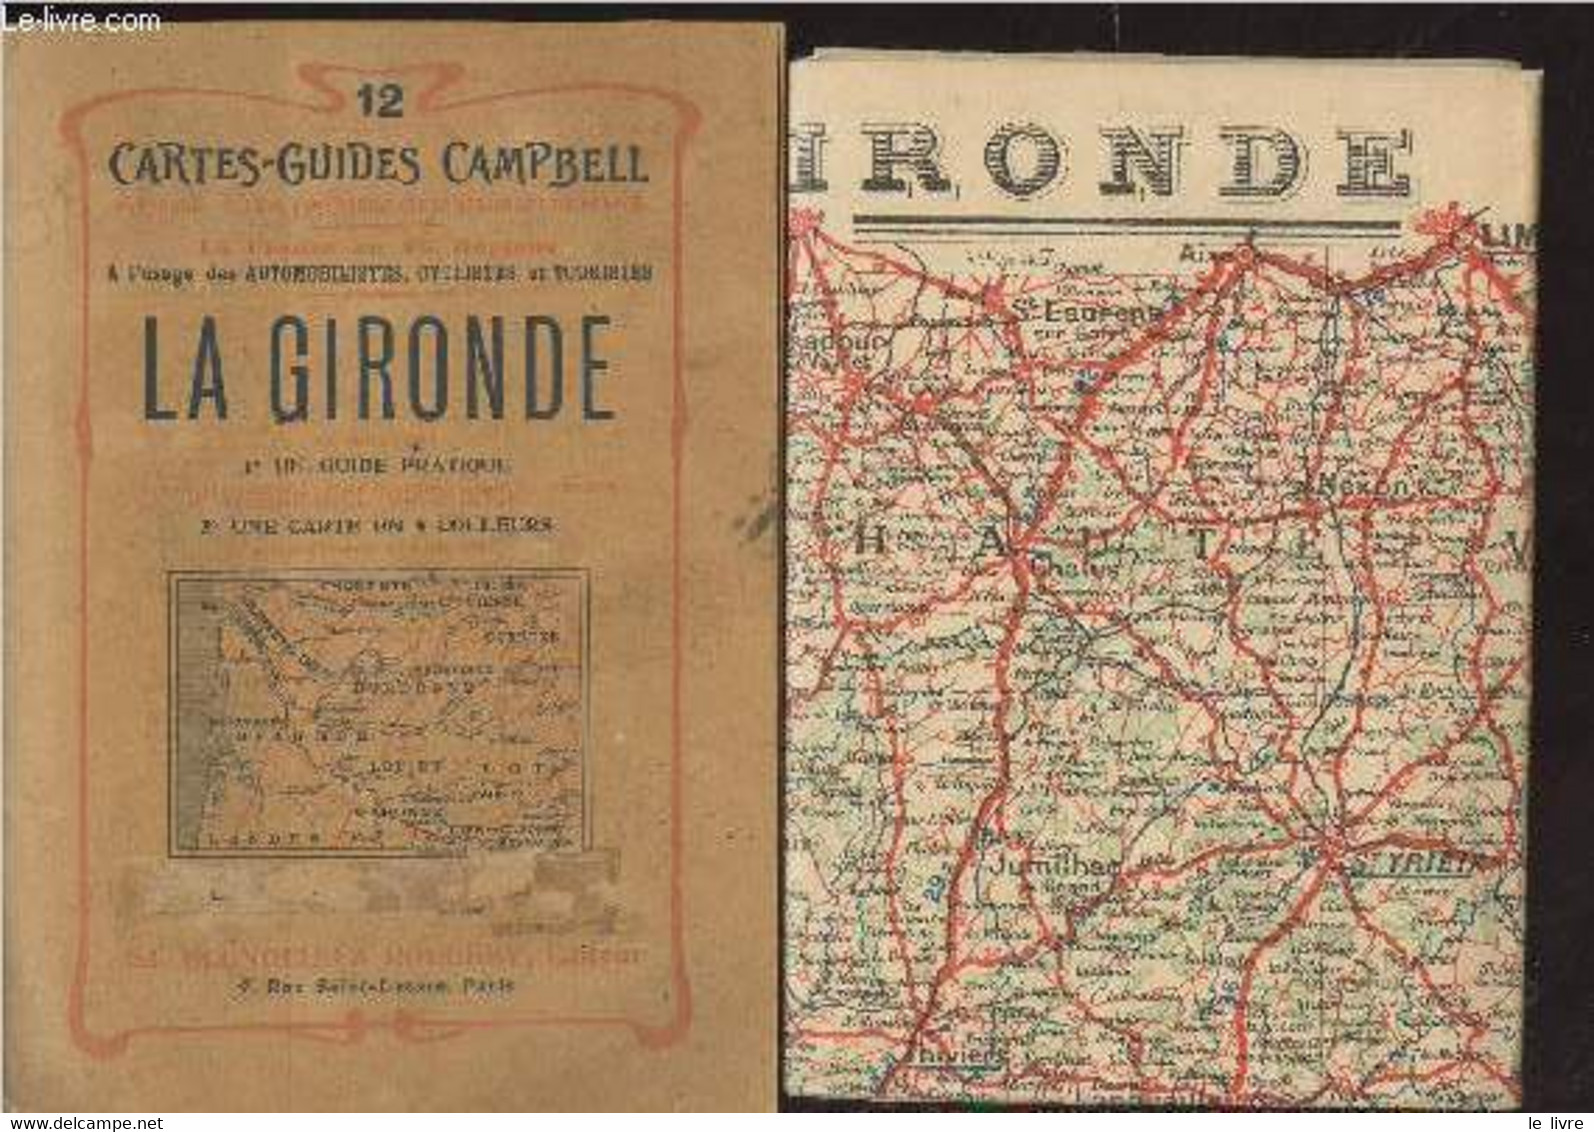 Cartes-Guides Campbelle N°12 : La Gironde - Collectif - 0 - Cartes/Atlas